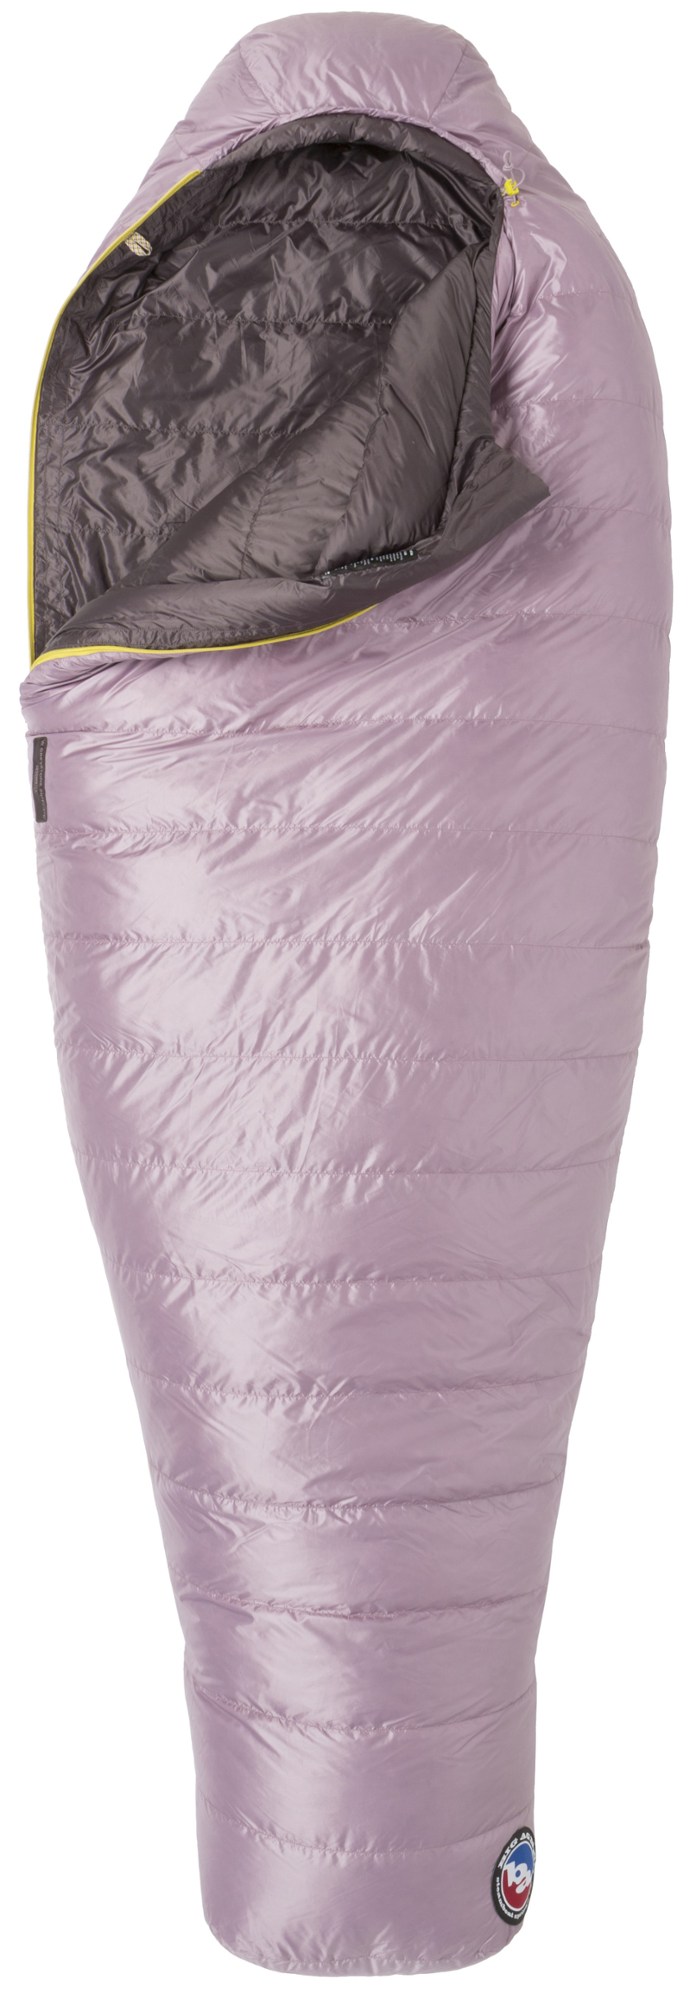 спальный мешок echo park 0 big agnes зеленый Спальный мешок Greystone 20 — женский Big Agnes, фиолетовый